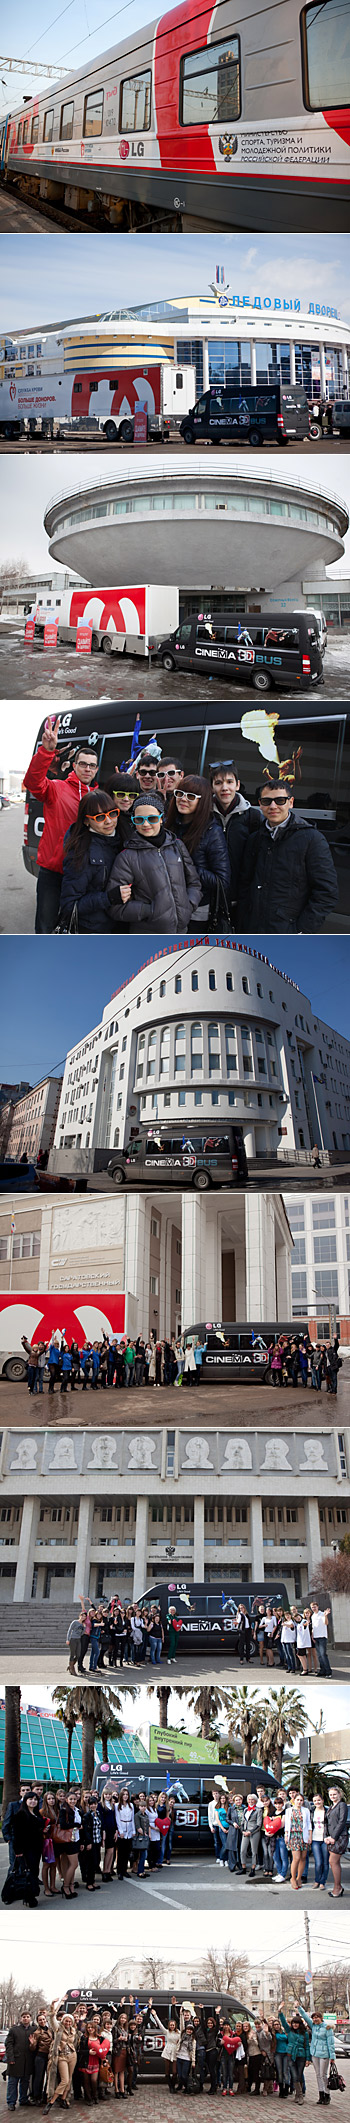 Автобус LG Cinema 3D посетил 8 российских городов, следуя по маршруту проекта «Поезд инноваций и добрых дел»